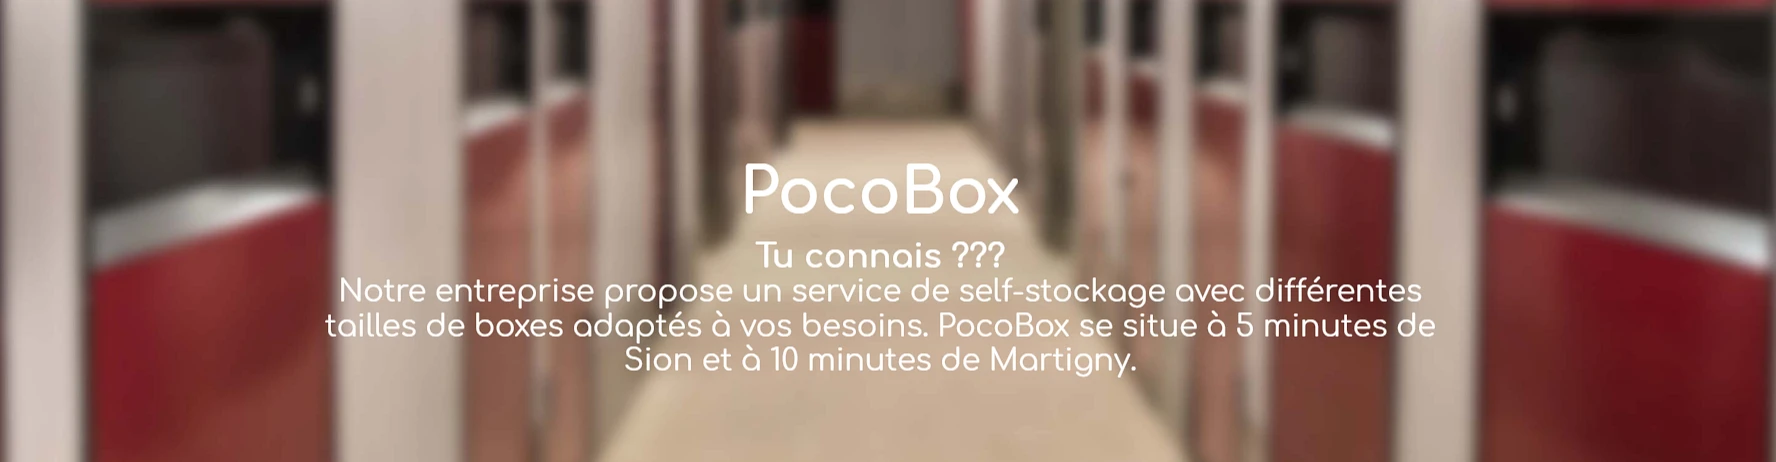 PocoBox